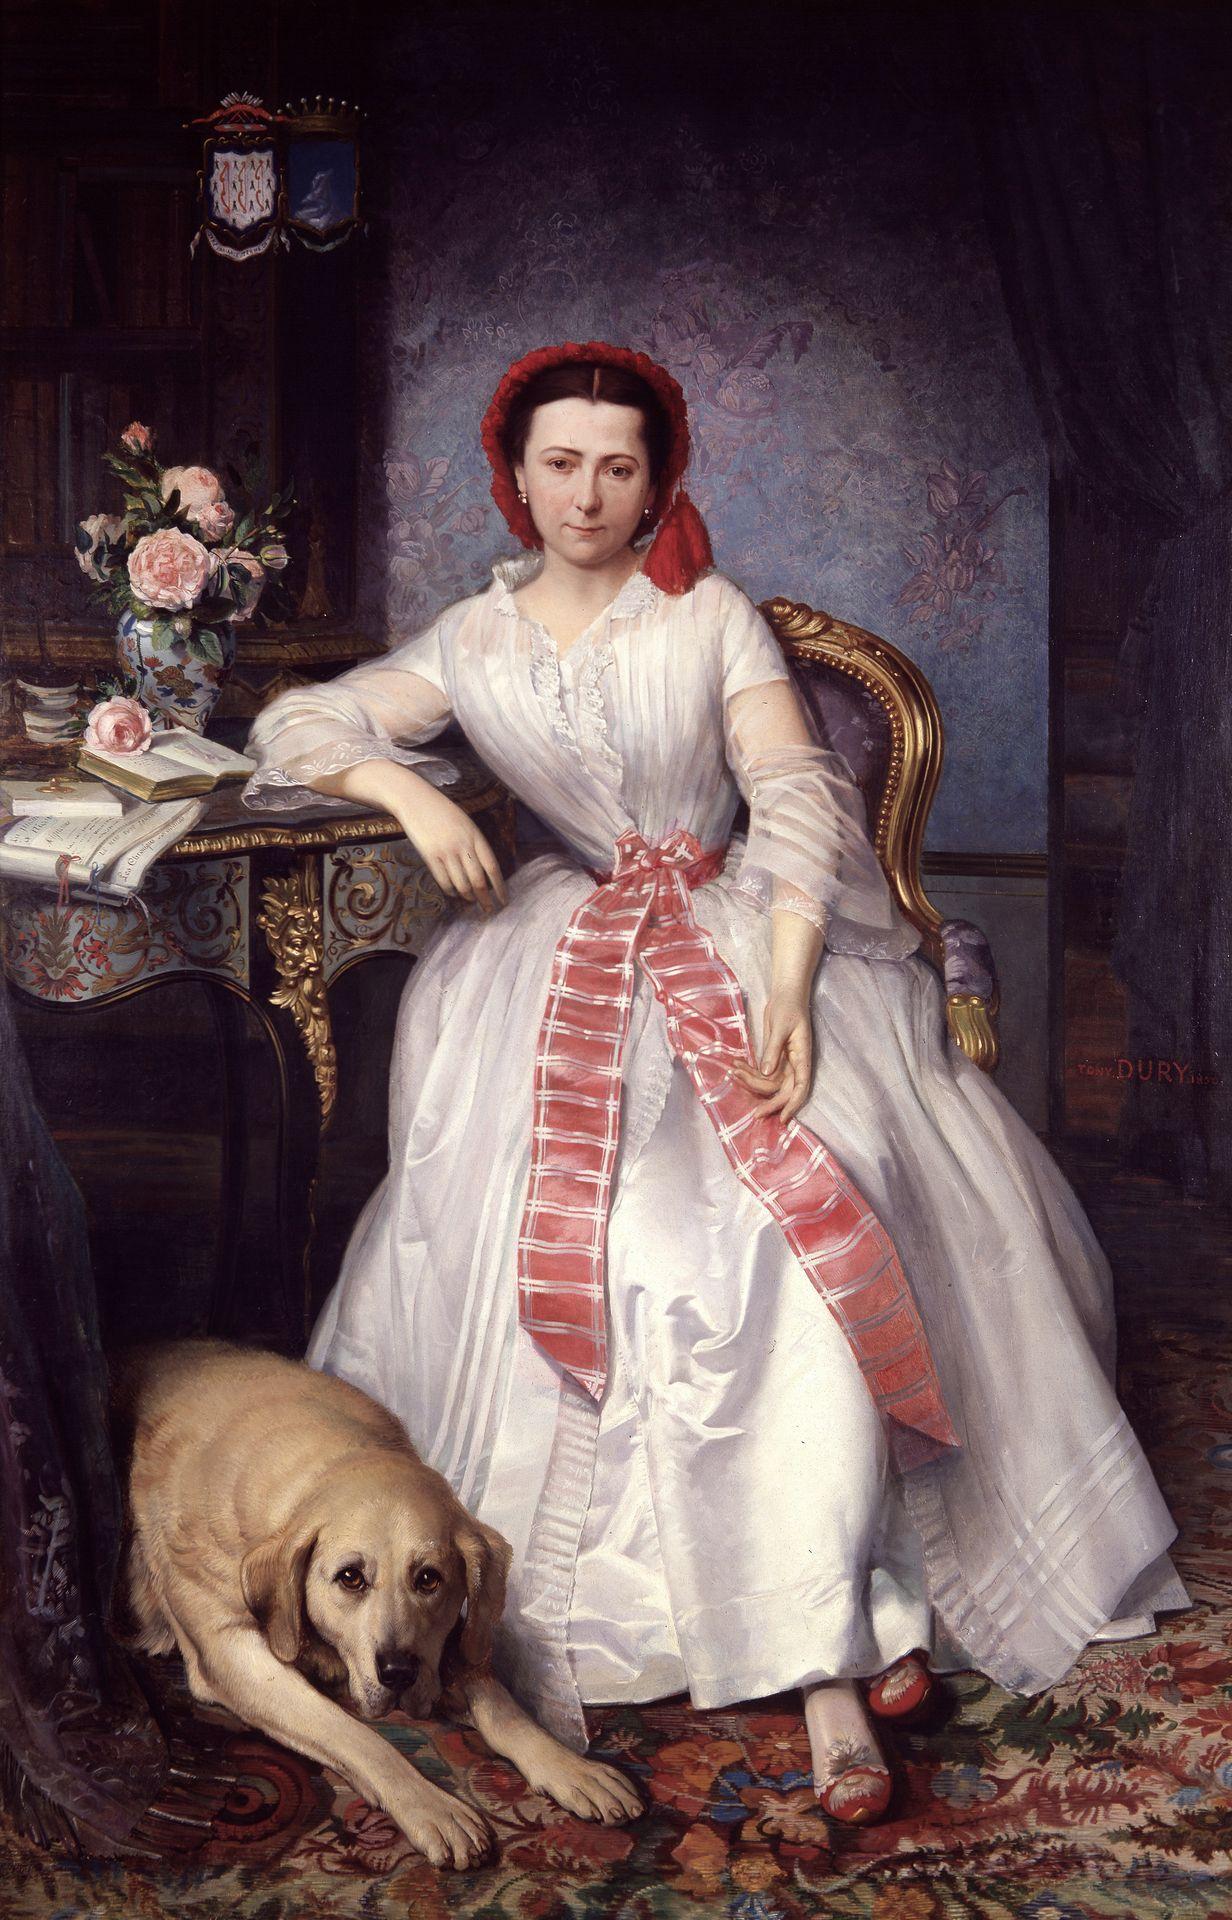 Josephines Portrait, Antoine Dury